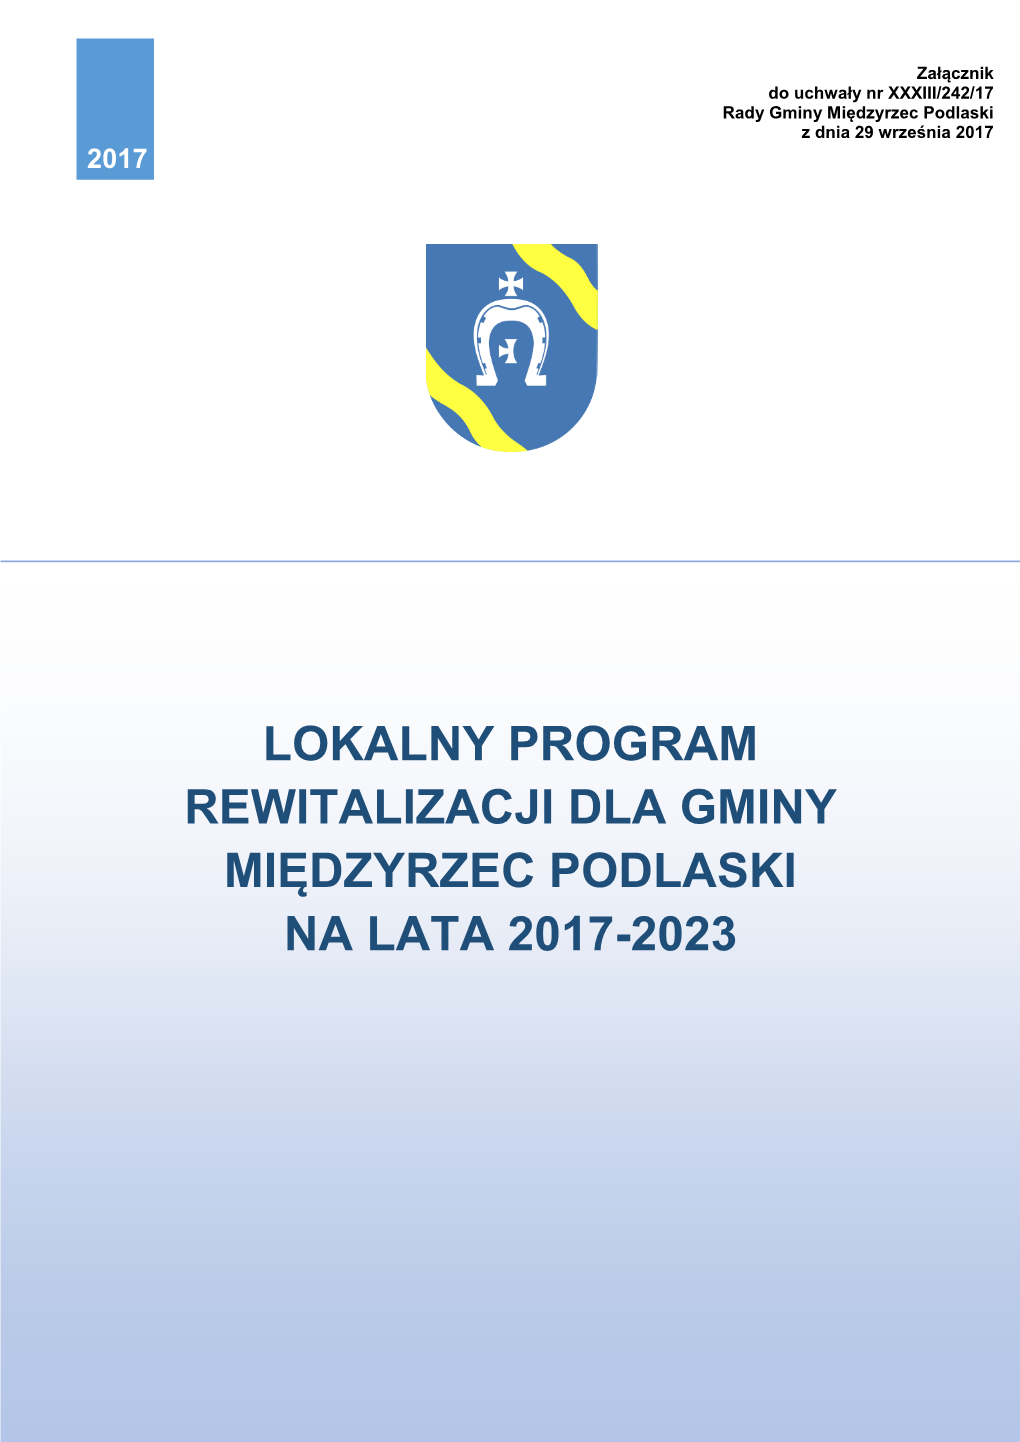 Lokalny Program Rewitalizacji Dla Gminy Międzyrzec Podlaski Na Lata 2017-2023